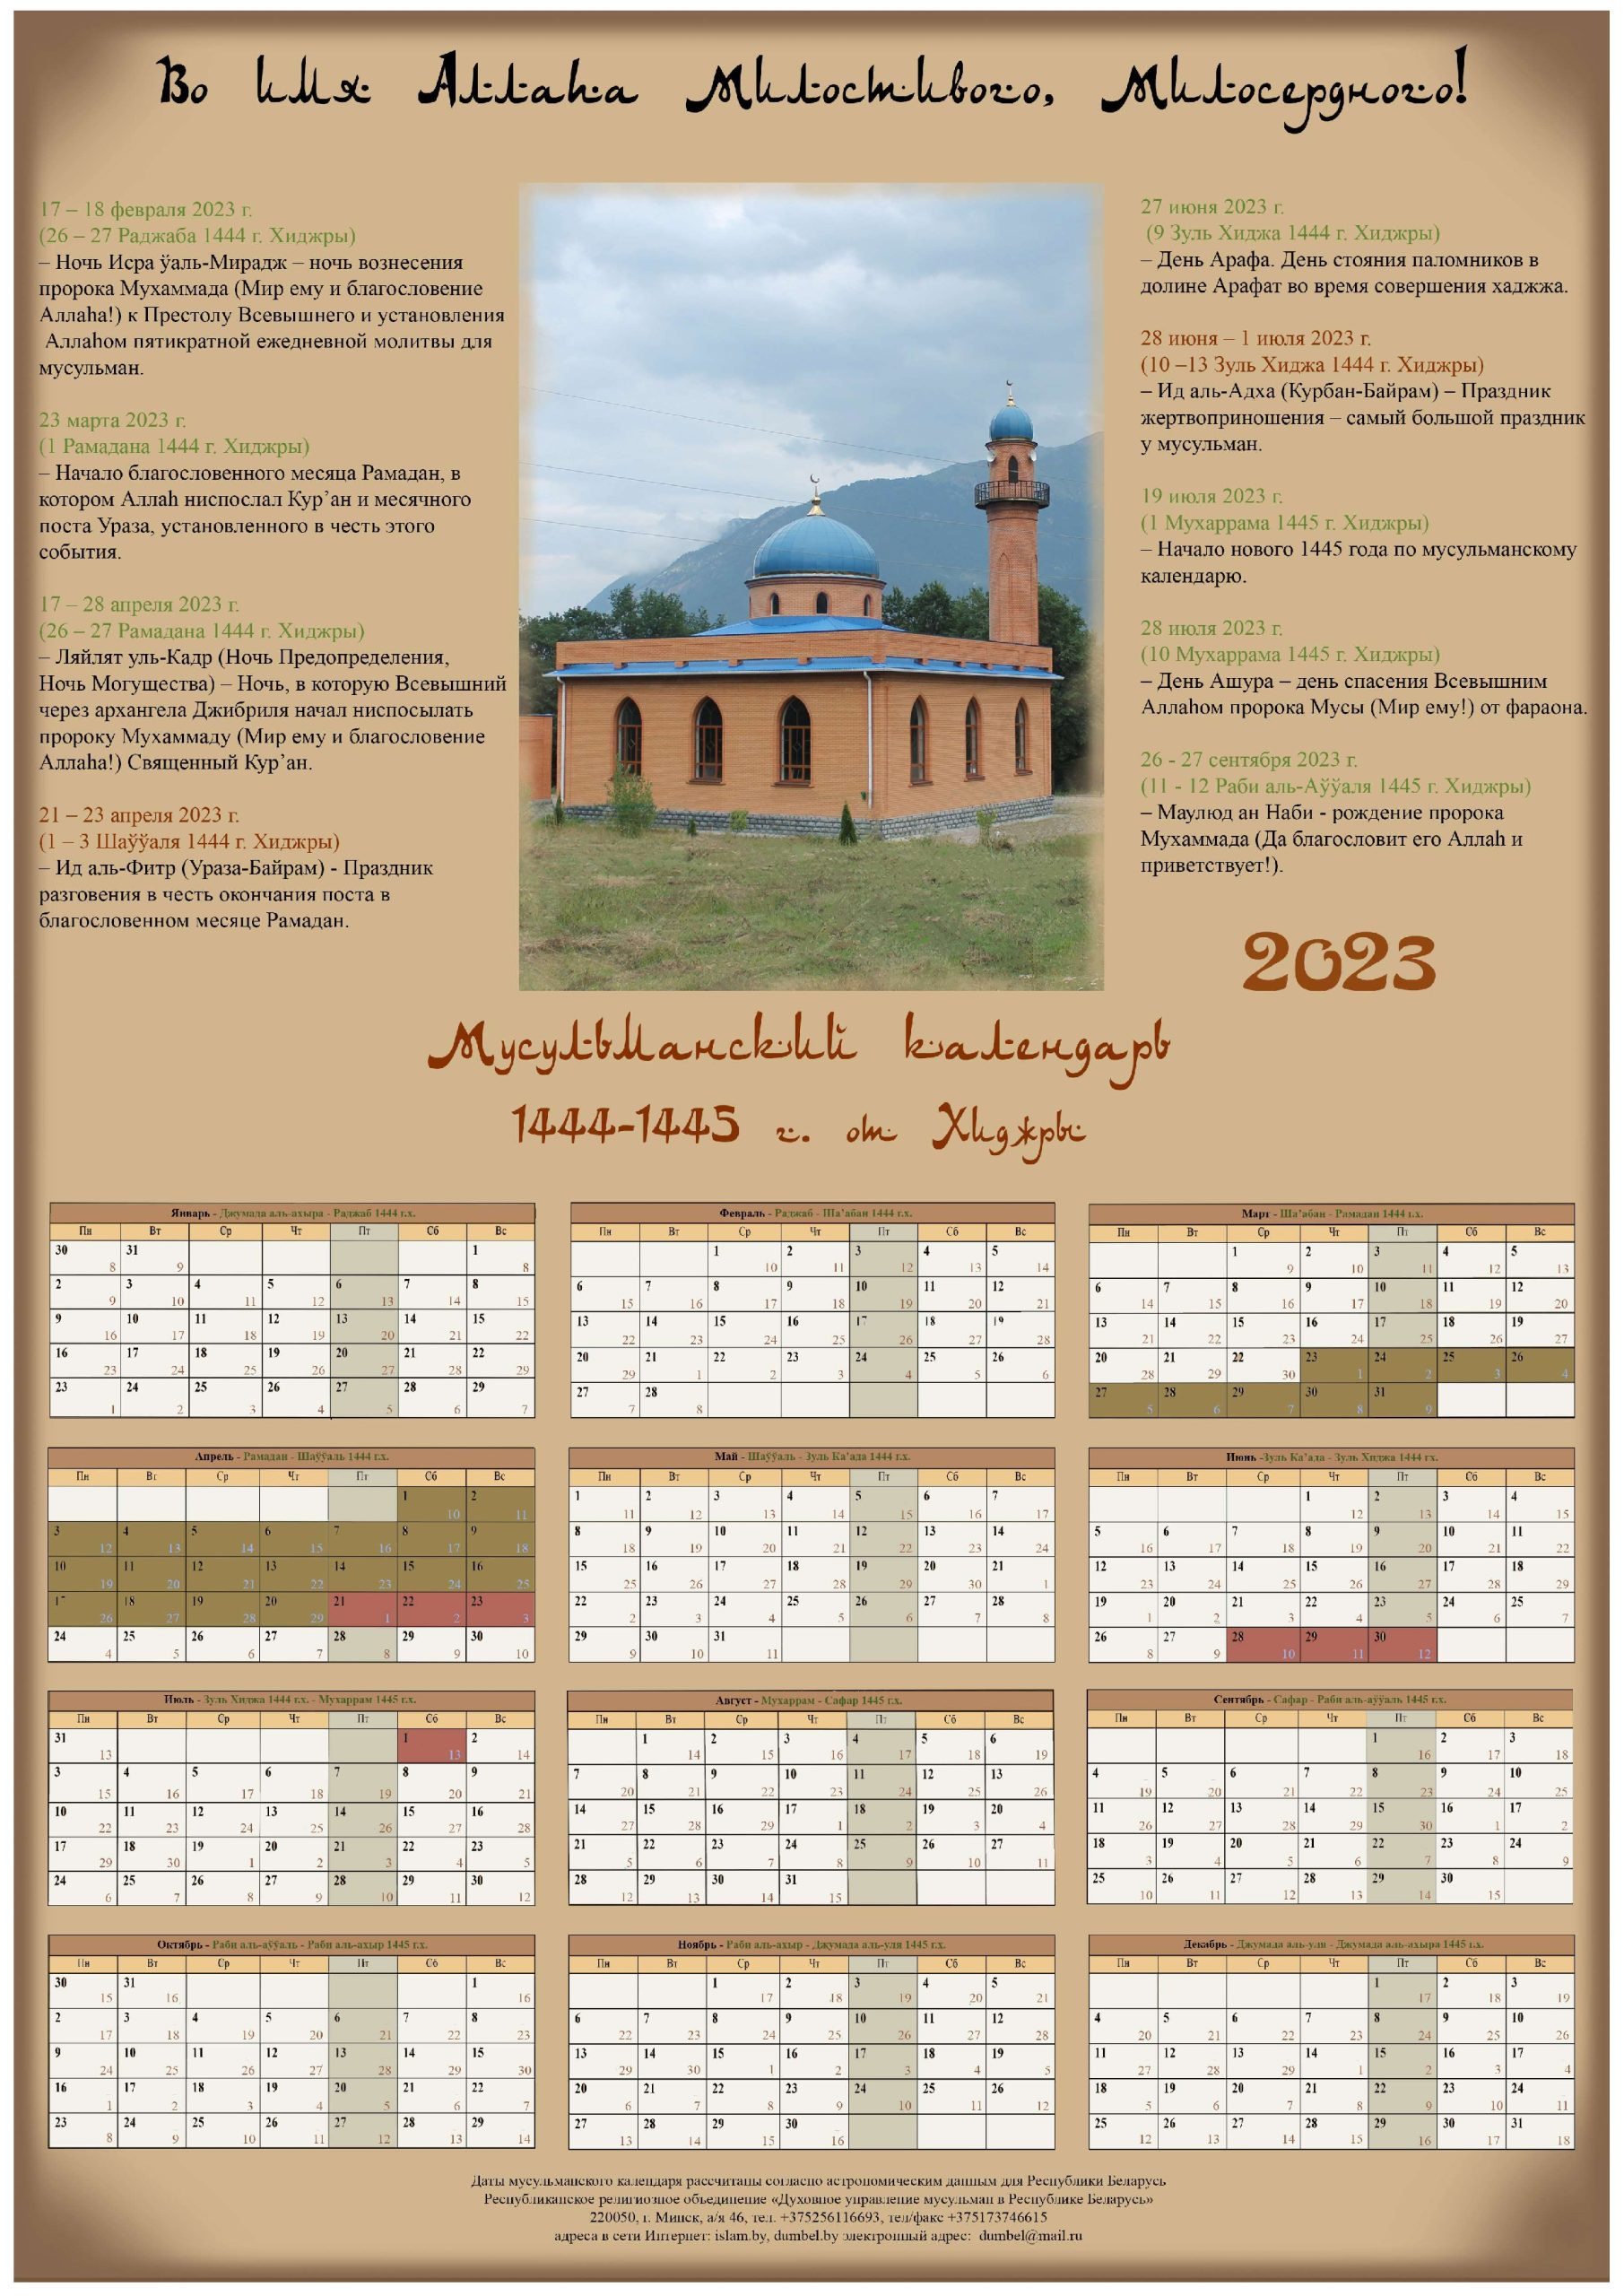 Календарь 2023 года беларусь. Мусульманский календарь на 2023 год с праздниками. Исламский календарь (Хиджра) на 2023. Исламский календарь на 2023 год. Мусульманский календарь 2023.